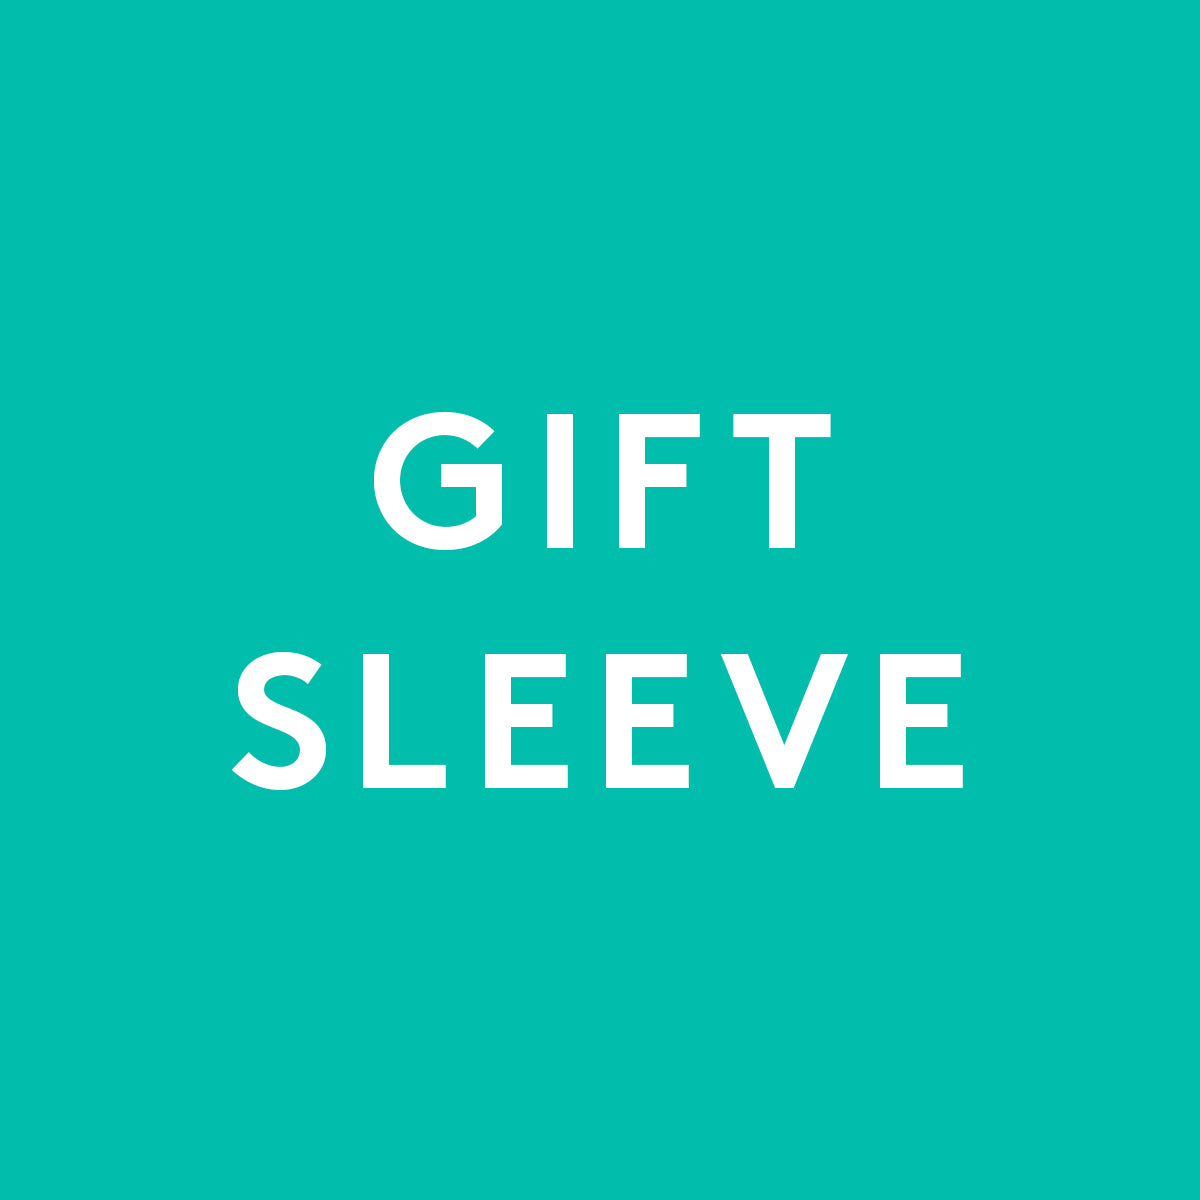 Custom Online Gift Cube Sleeve